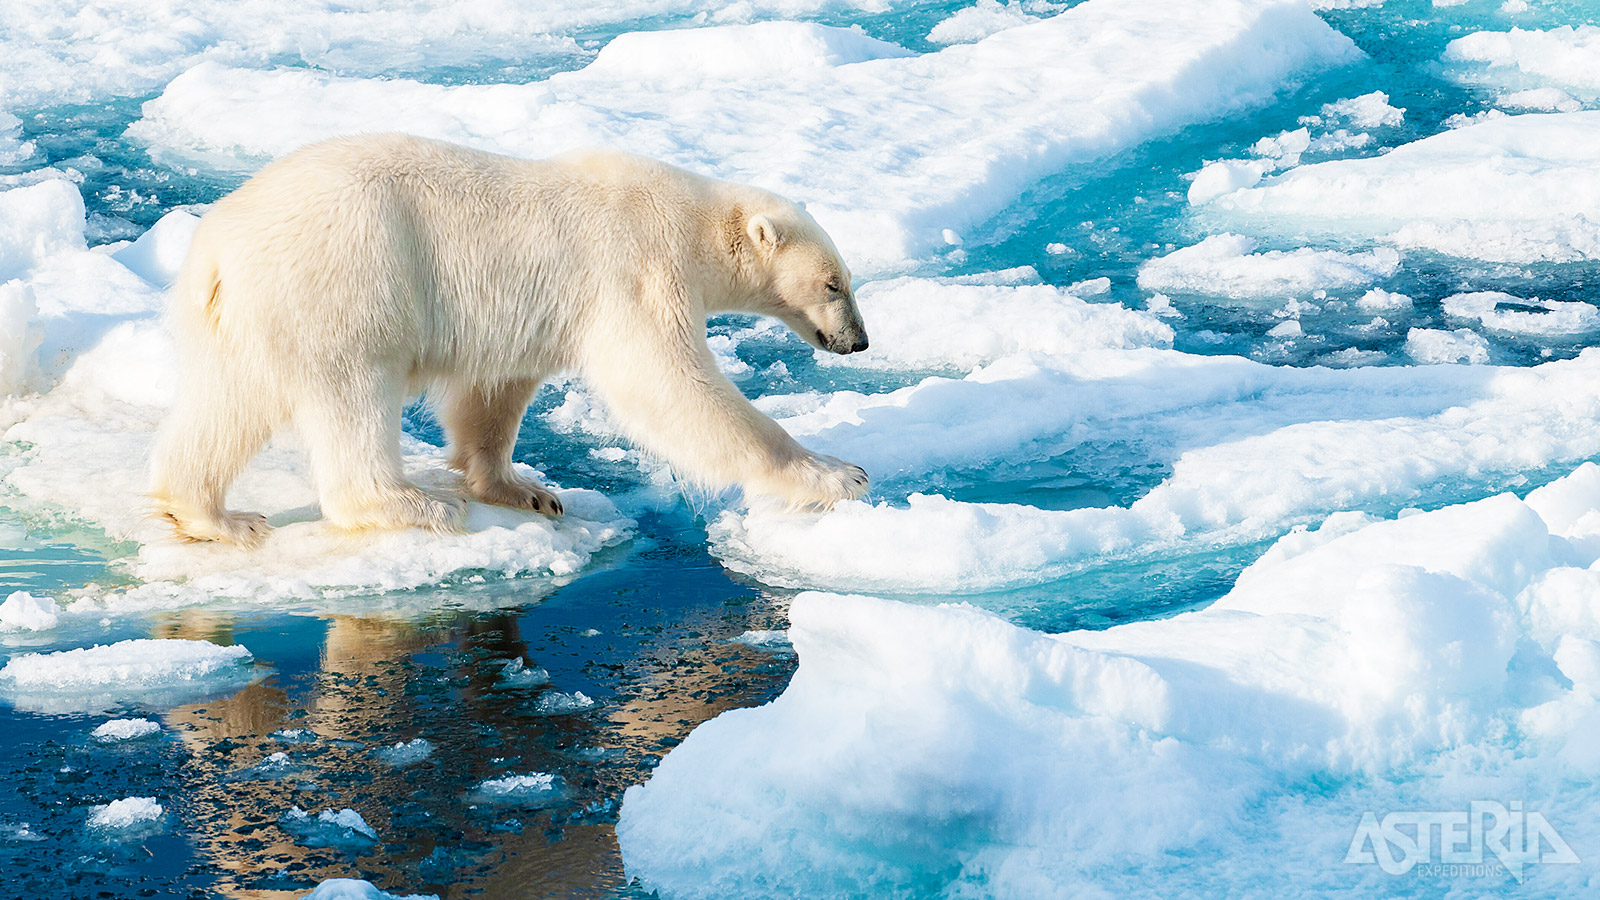 Hét symbool van Spitsbergen is natuurlijk de ijsbeer